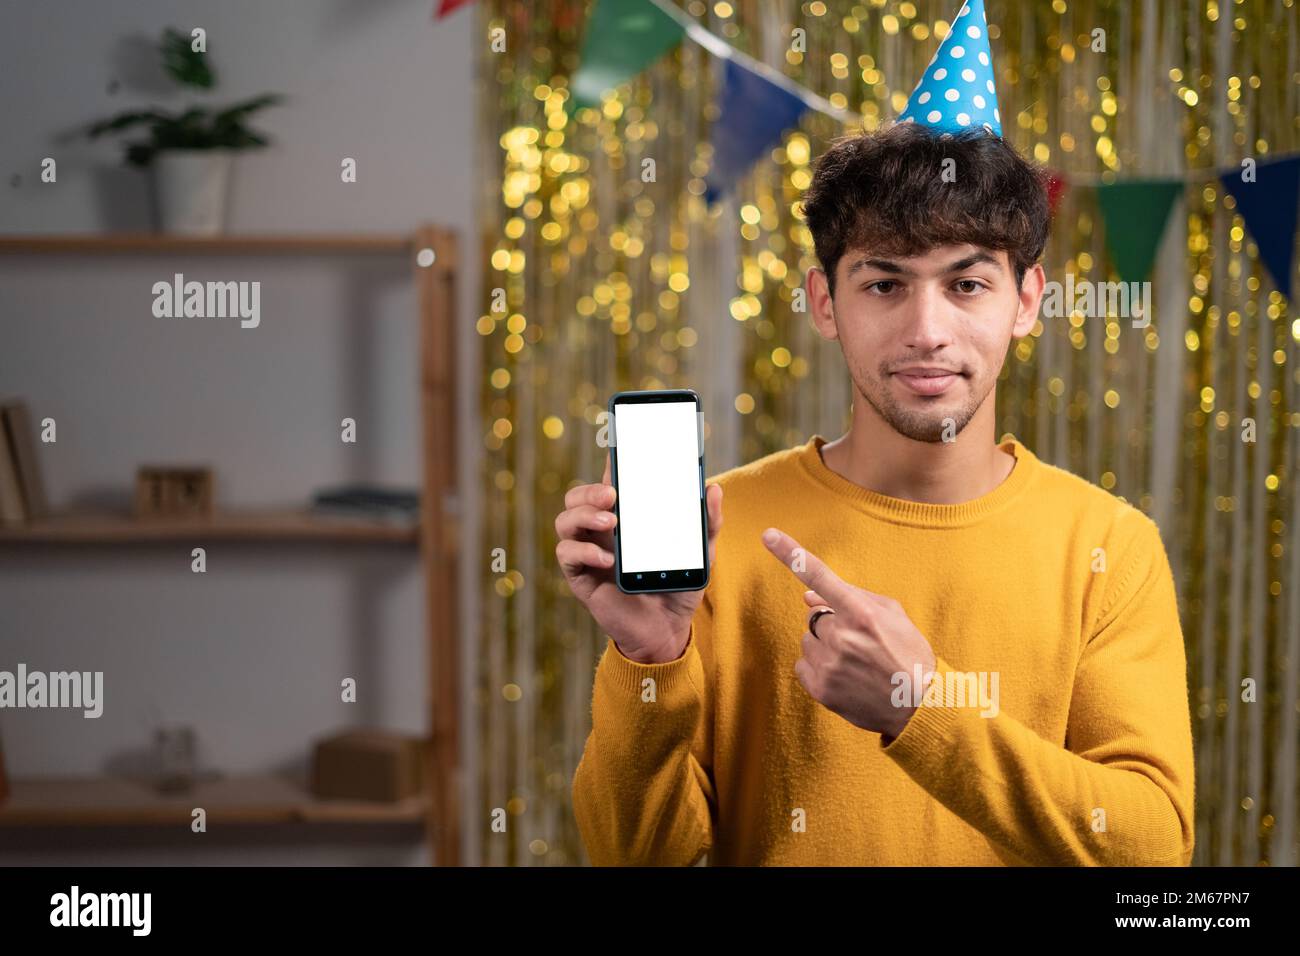 Modell eines jungen Mannes mit festlichem Hut, der mit dem Finger auf ein Mobiltelefon zeigt, mit einem leeren weißen Bildschirm, feiern die Geburtstagsparty zu Hause Stockfoto